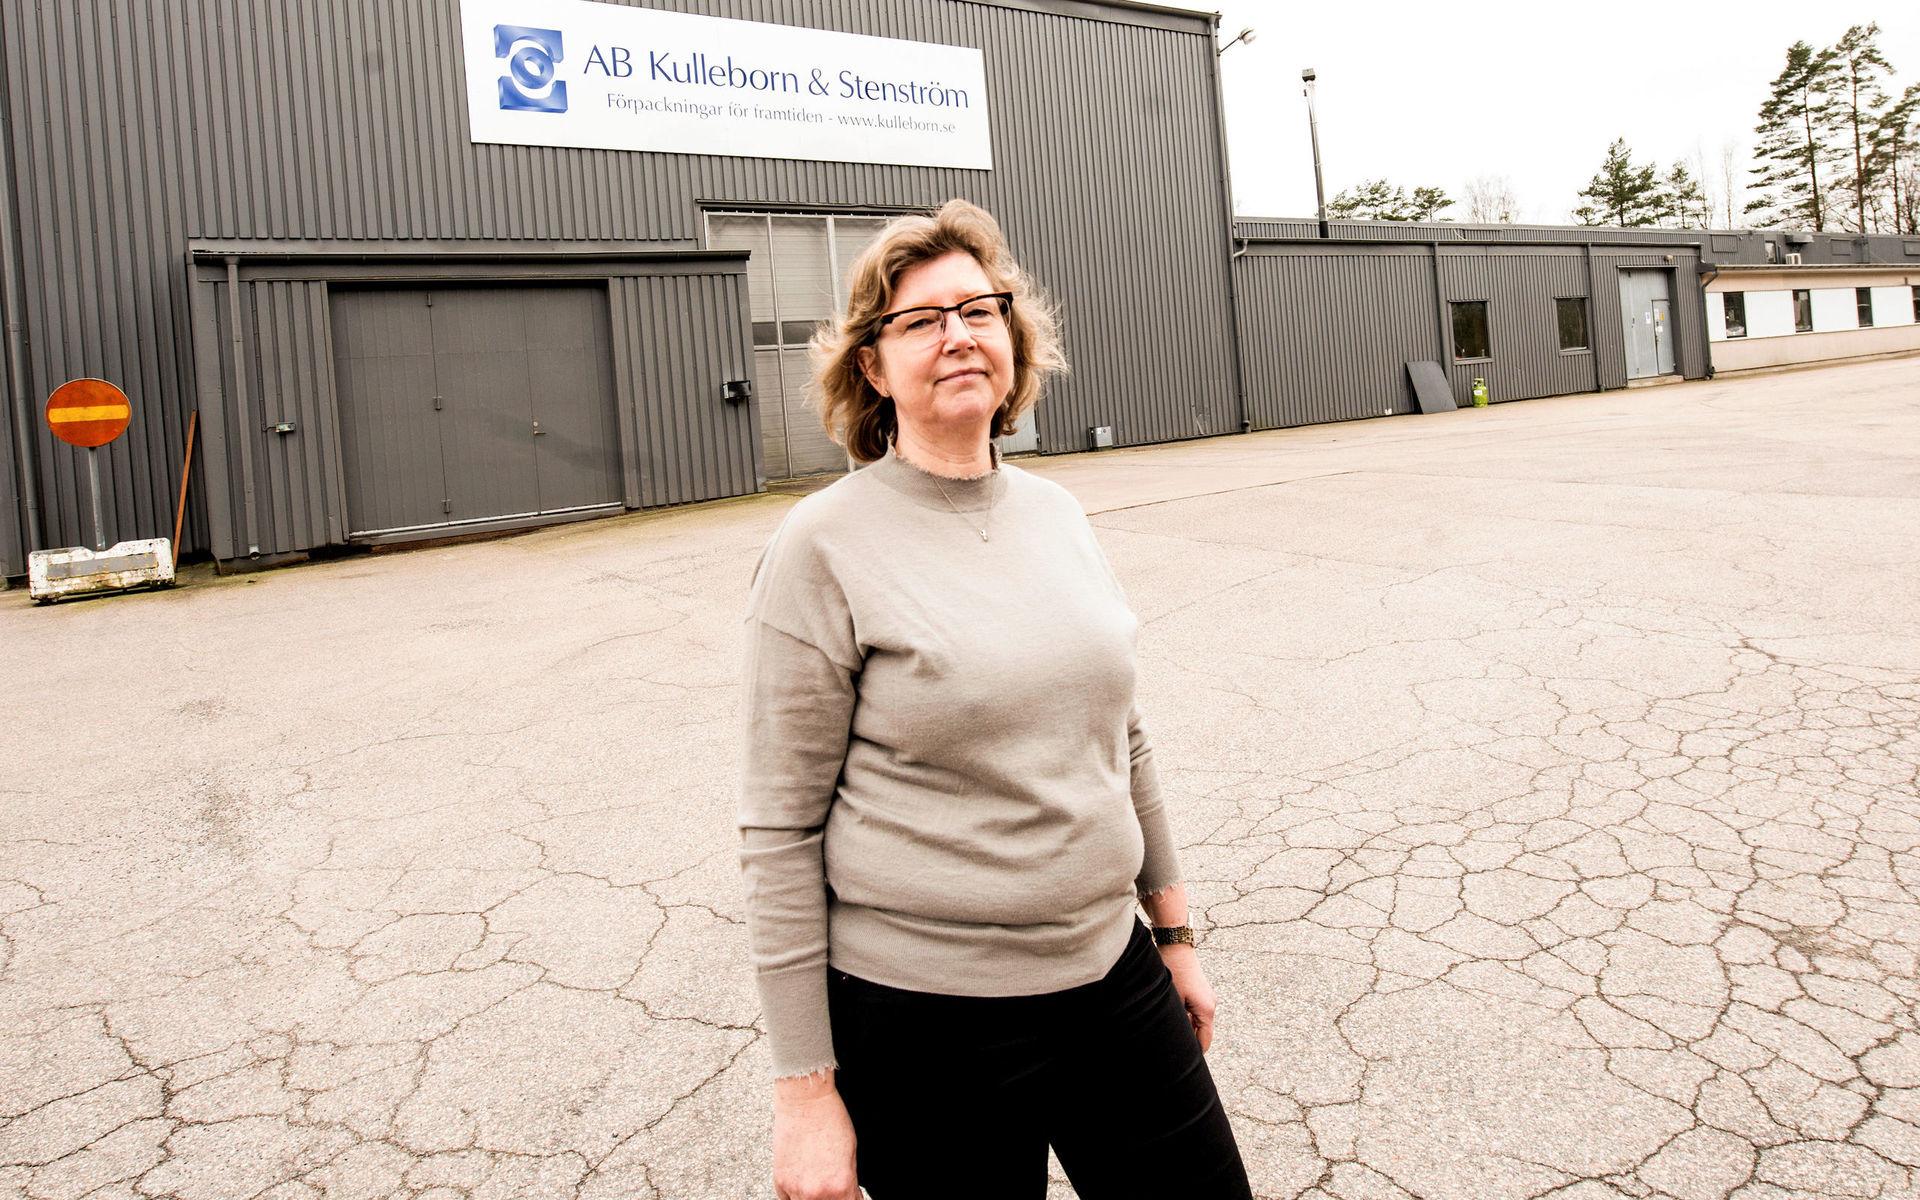 Pernilla Kulleborn förklarar att företaget har en omsättning på omkring 80 miljoner kronor och har fabriker i både Ullared och Hallstahammar.